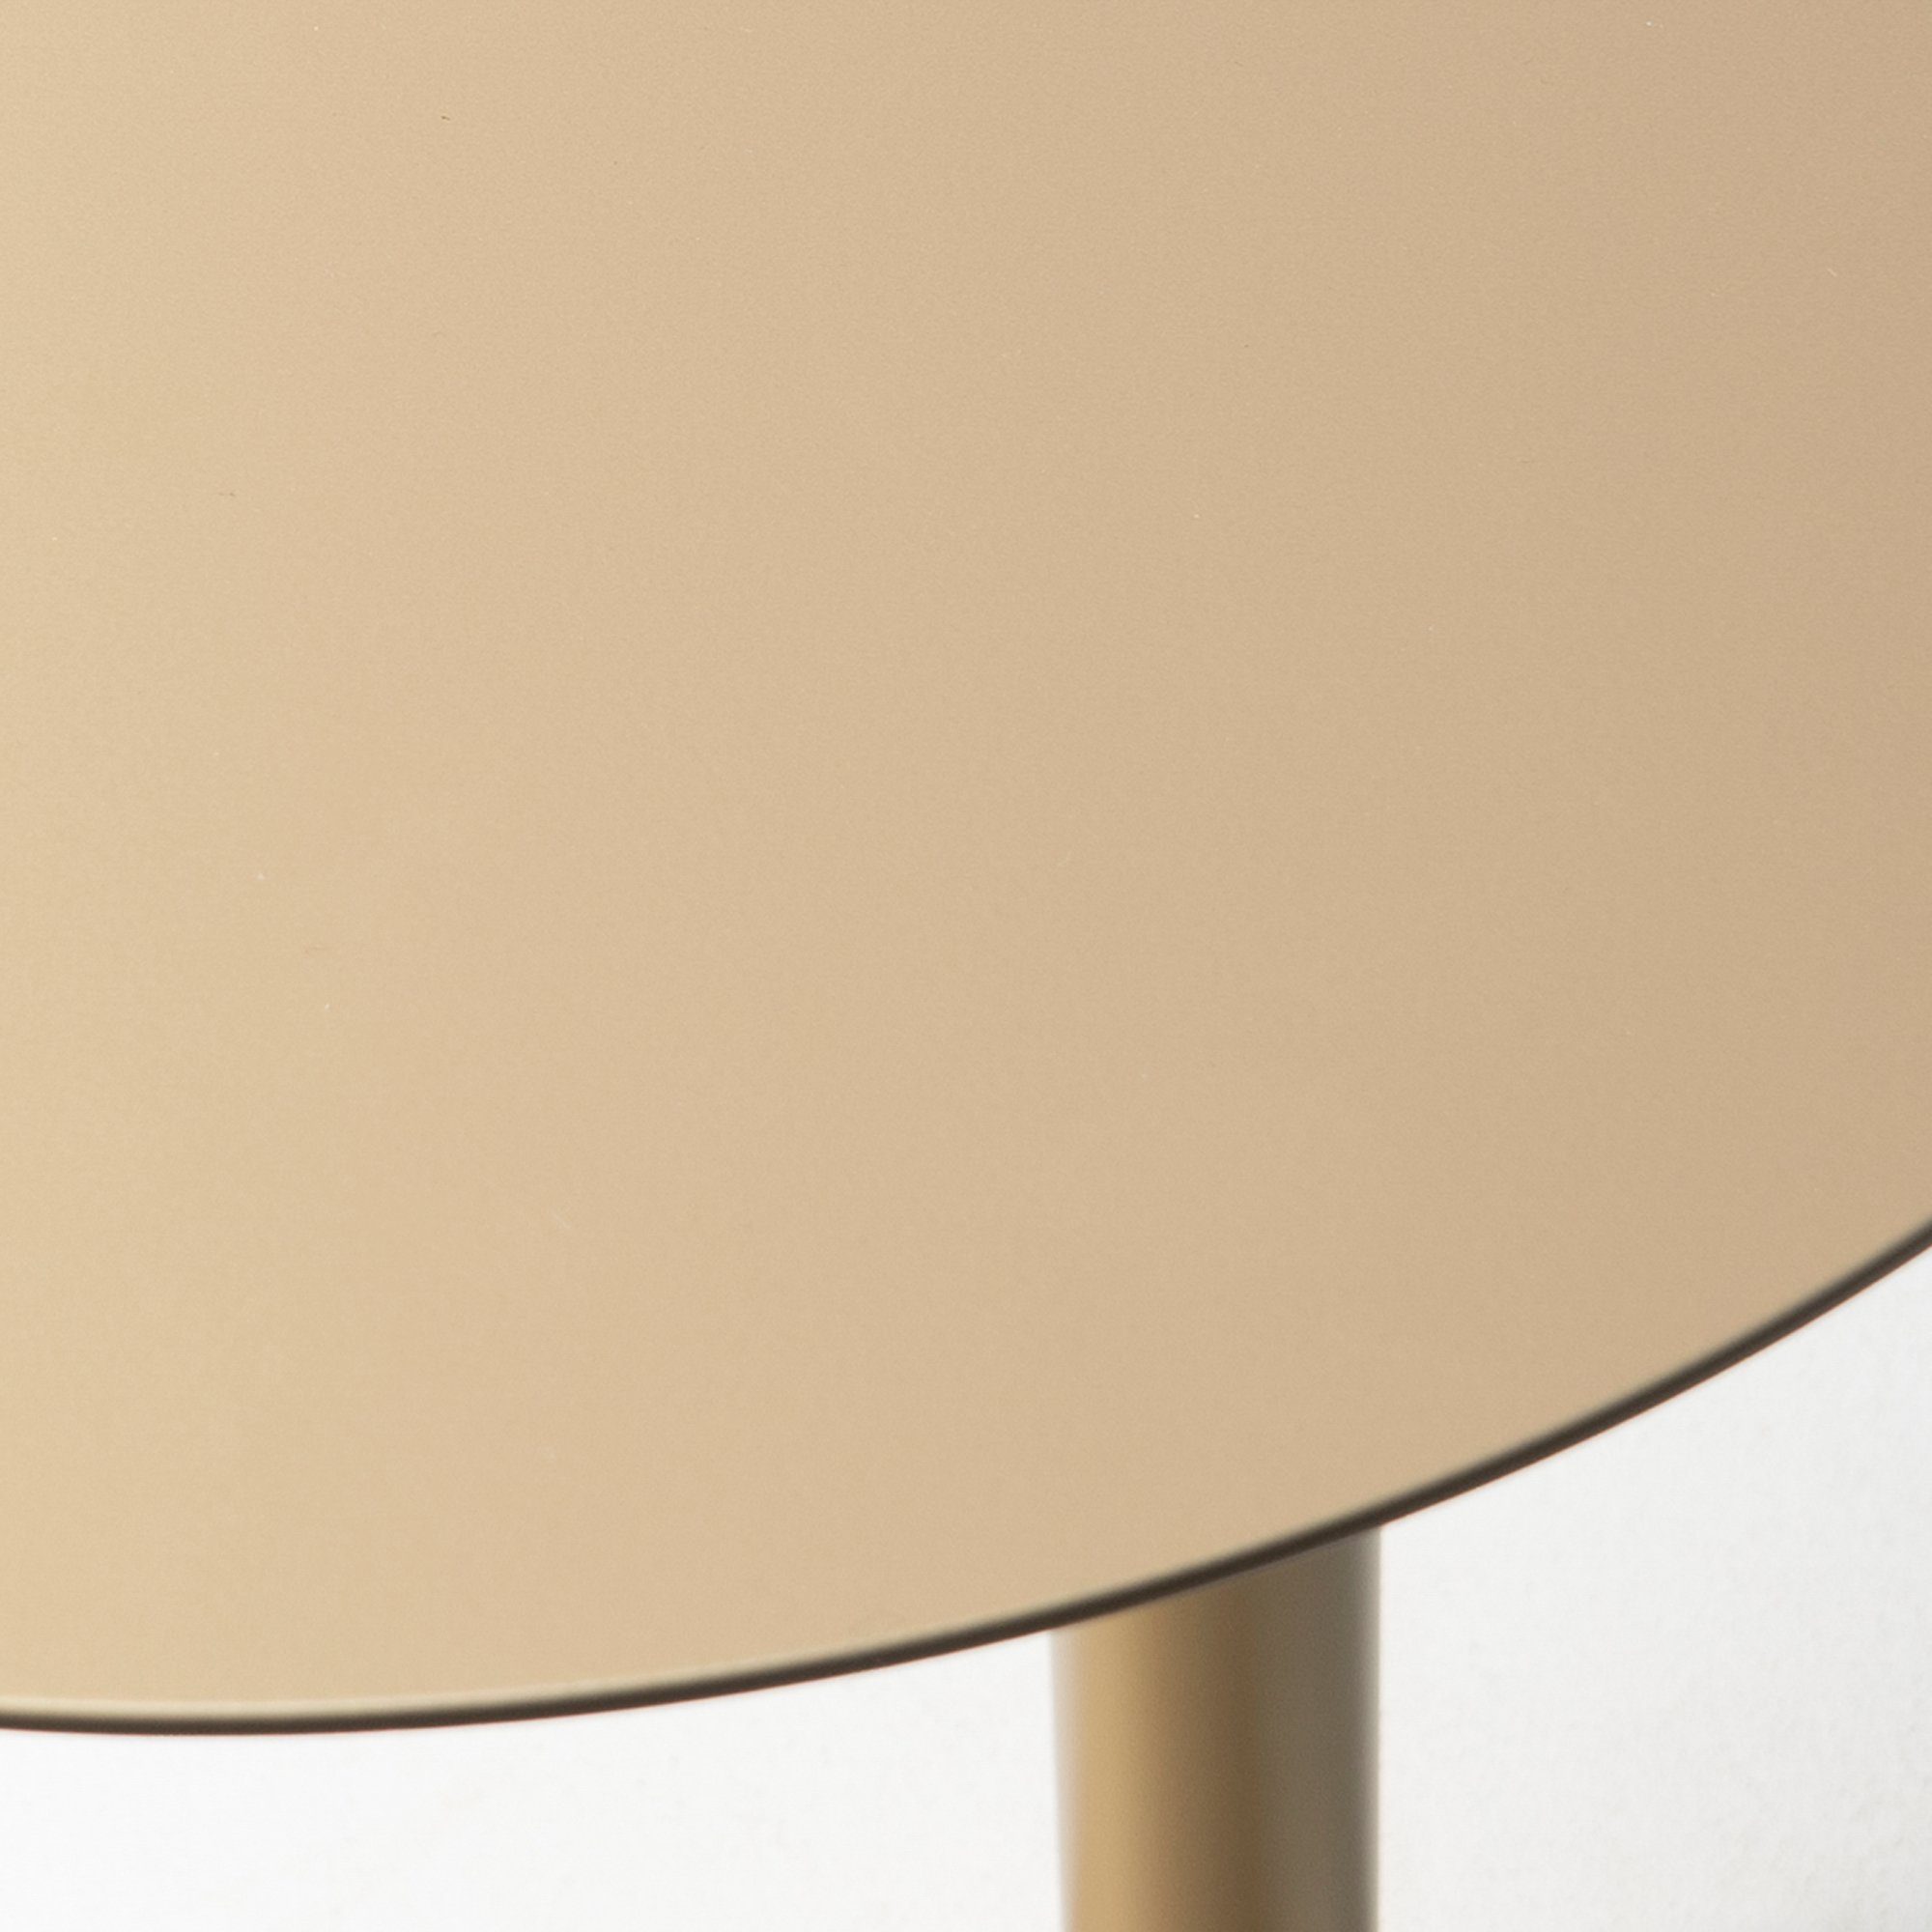 SUNSET Champagne Furniture Torna Beistelltisch 50 Beistelltisch Design 40x50x40cm - Torna